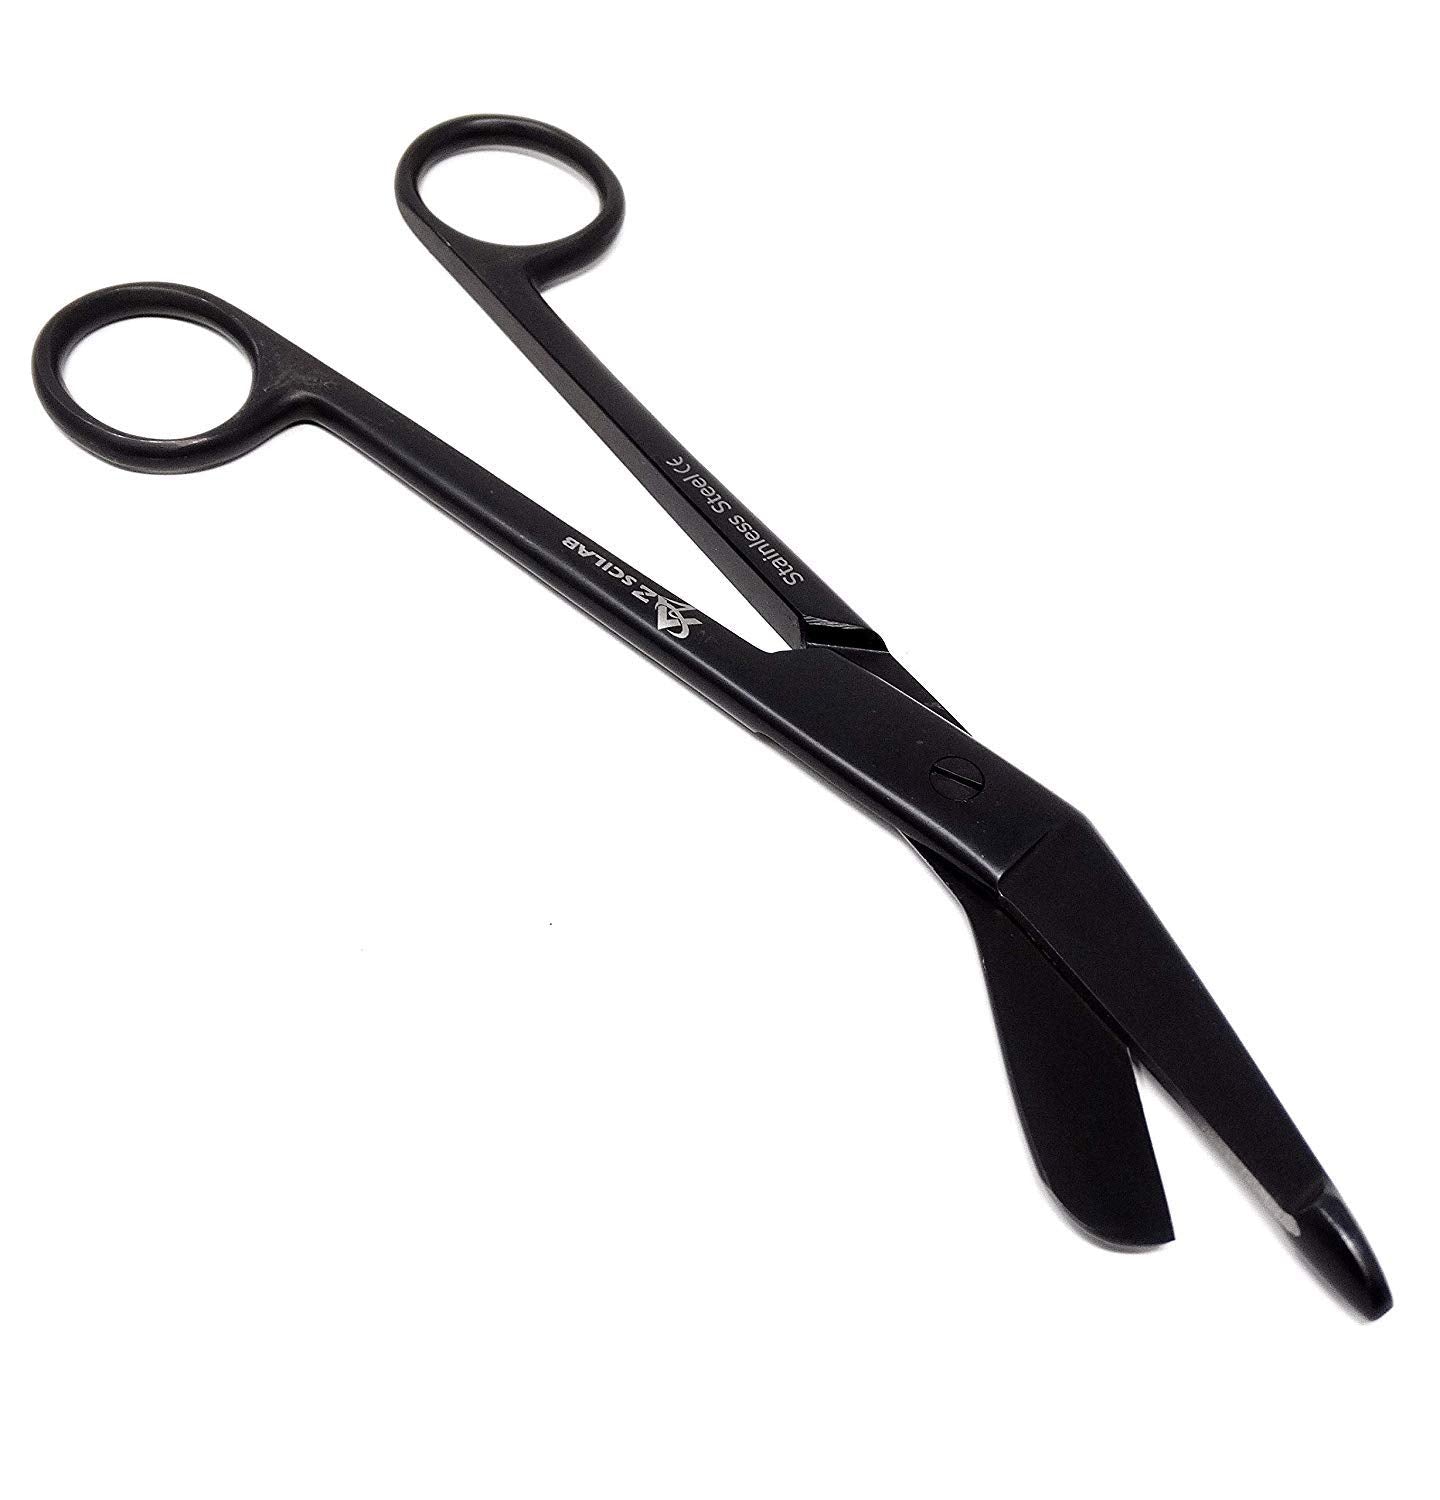 Full Black Lister Bandage Scissors 7.25" (18.4cm), Stainless Steel